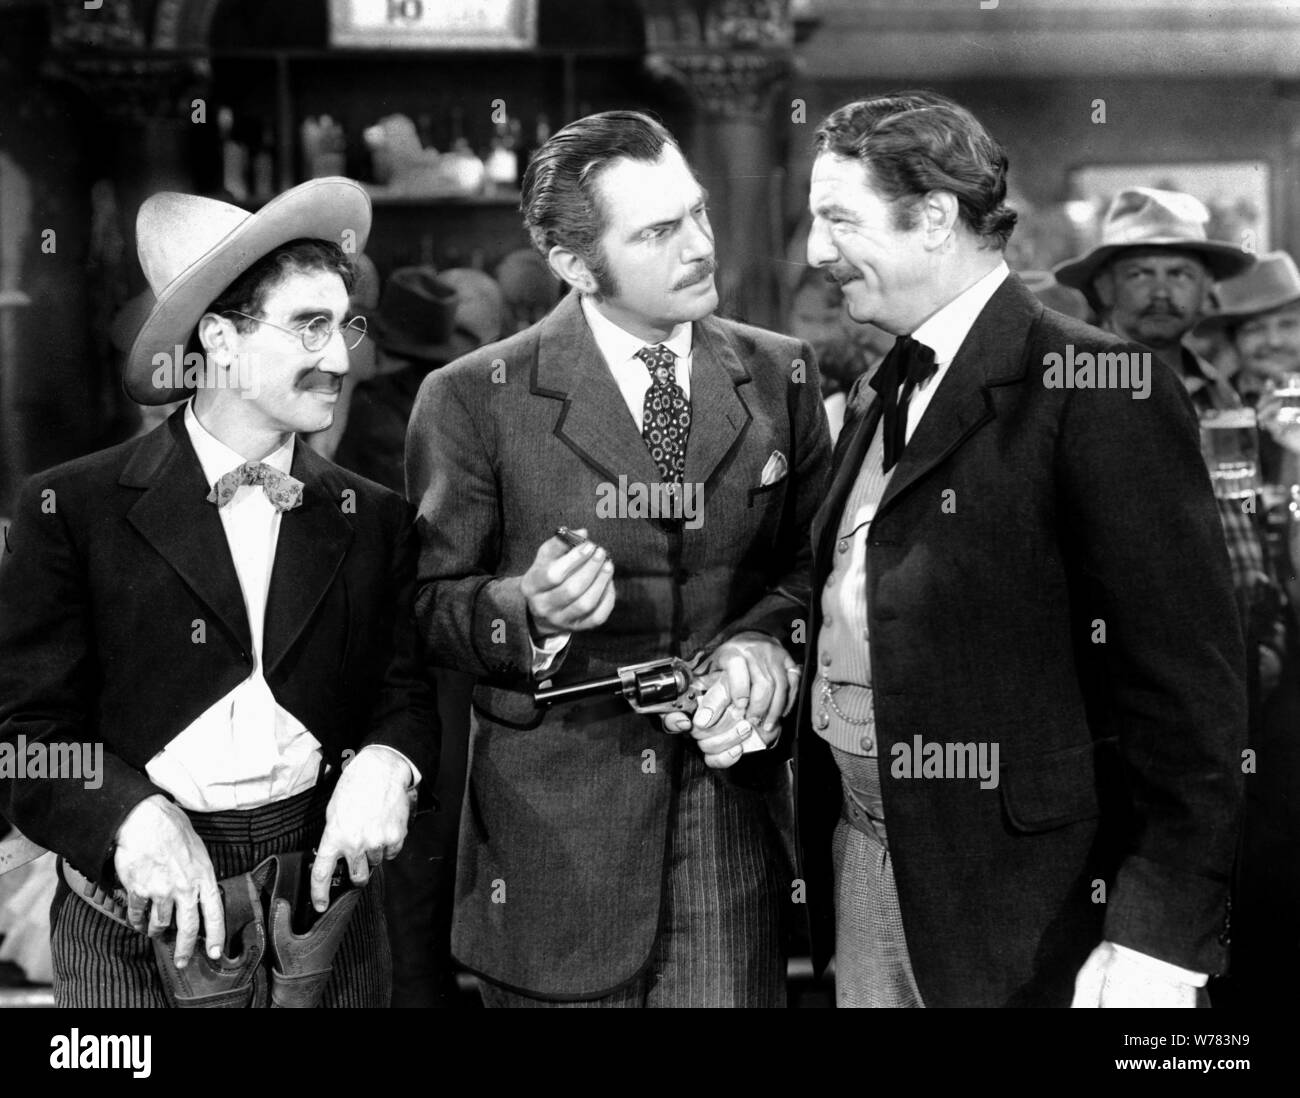 GROUCHO MARX, WALTER WOOLF KING, ROBERT BARRAT, GO WEST, 1940 Stock Photo